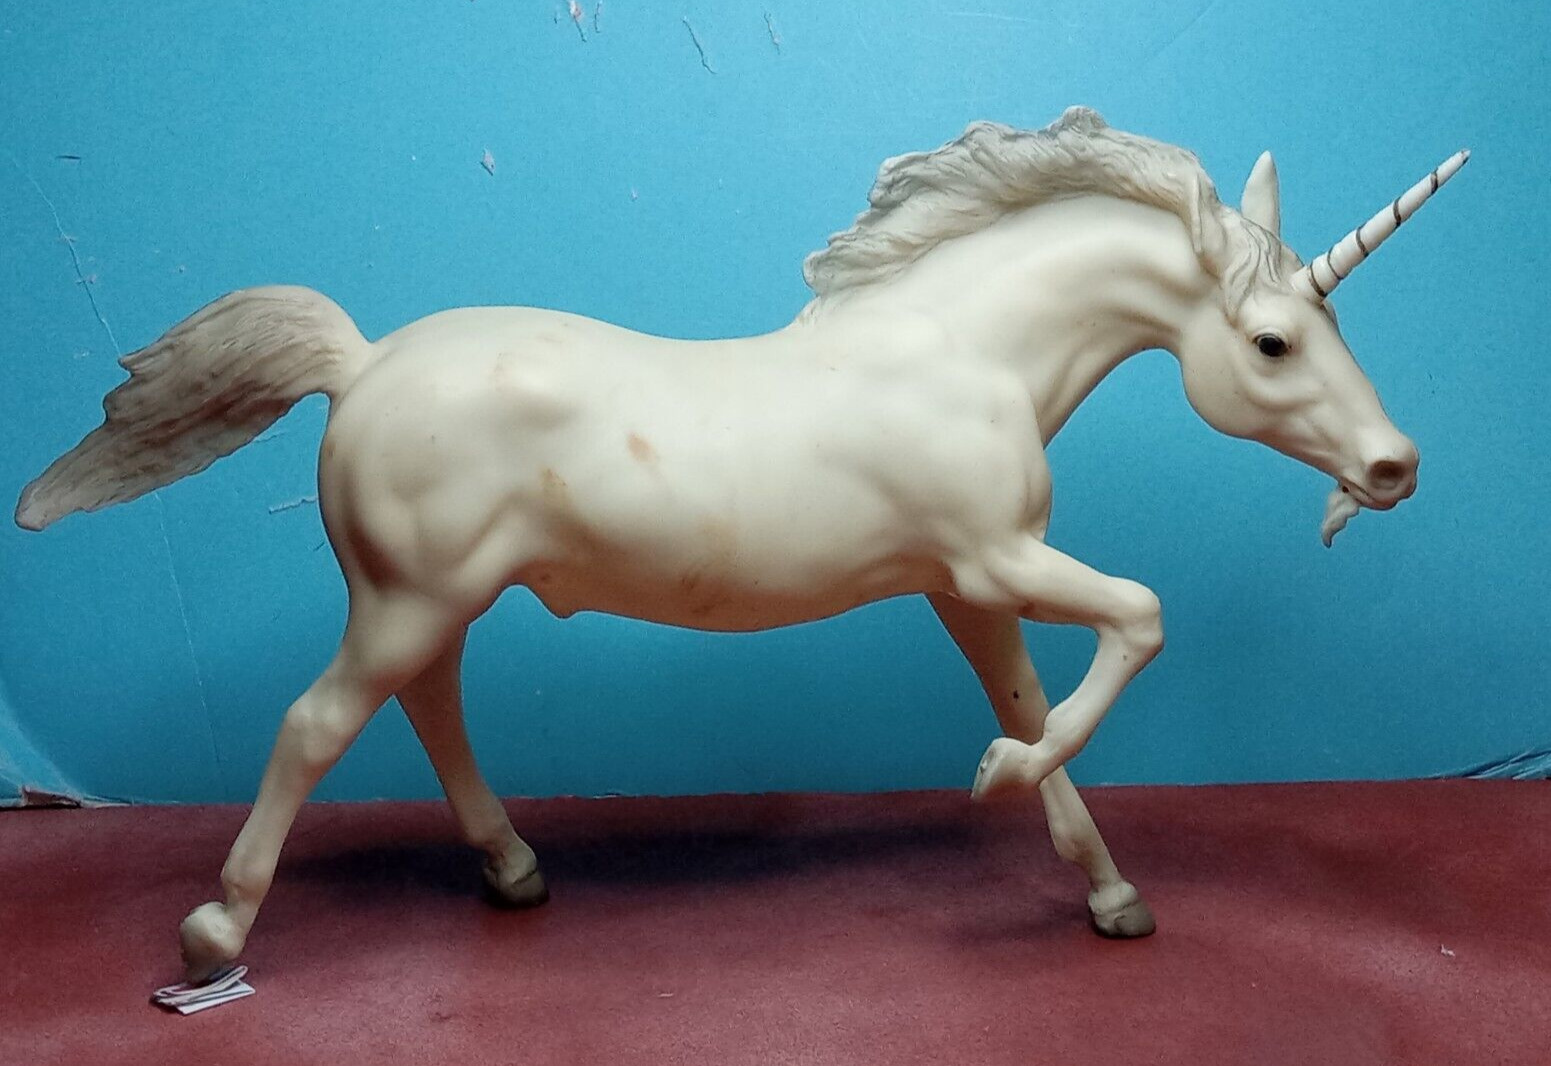 BREYER model horse Running Stallion UNICORN with horn and beard made 1982-88 NR